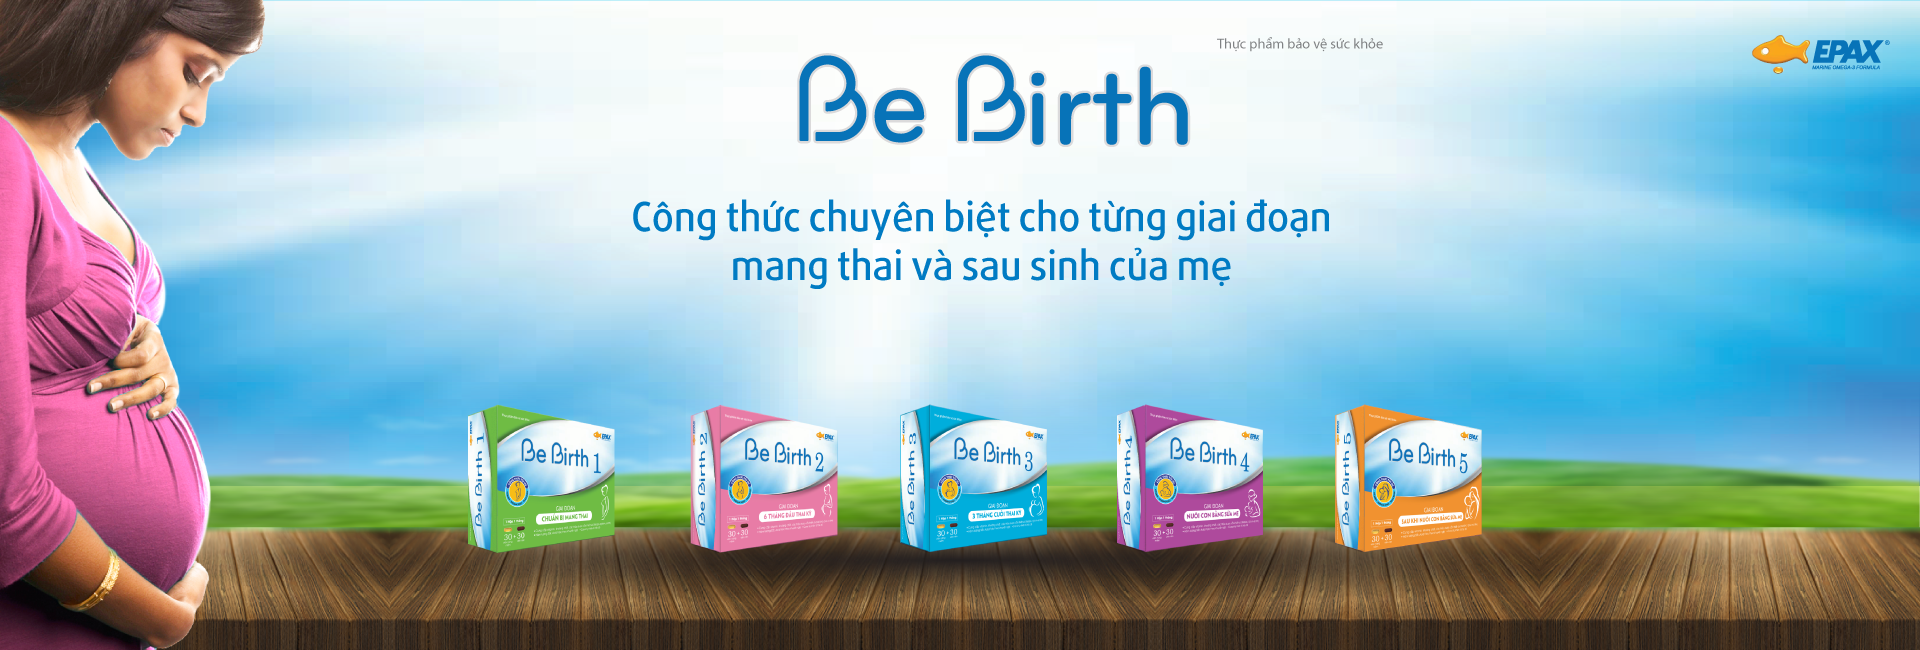 Be Birth- Sản phẩm chuyên biệt cho từng giai đoạn trong thai kỳ